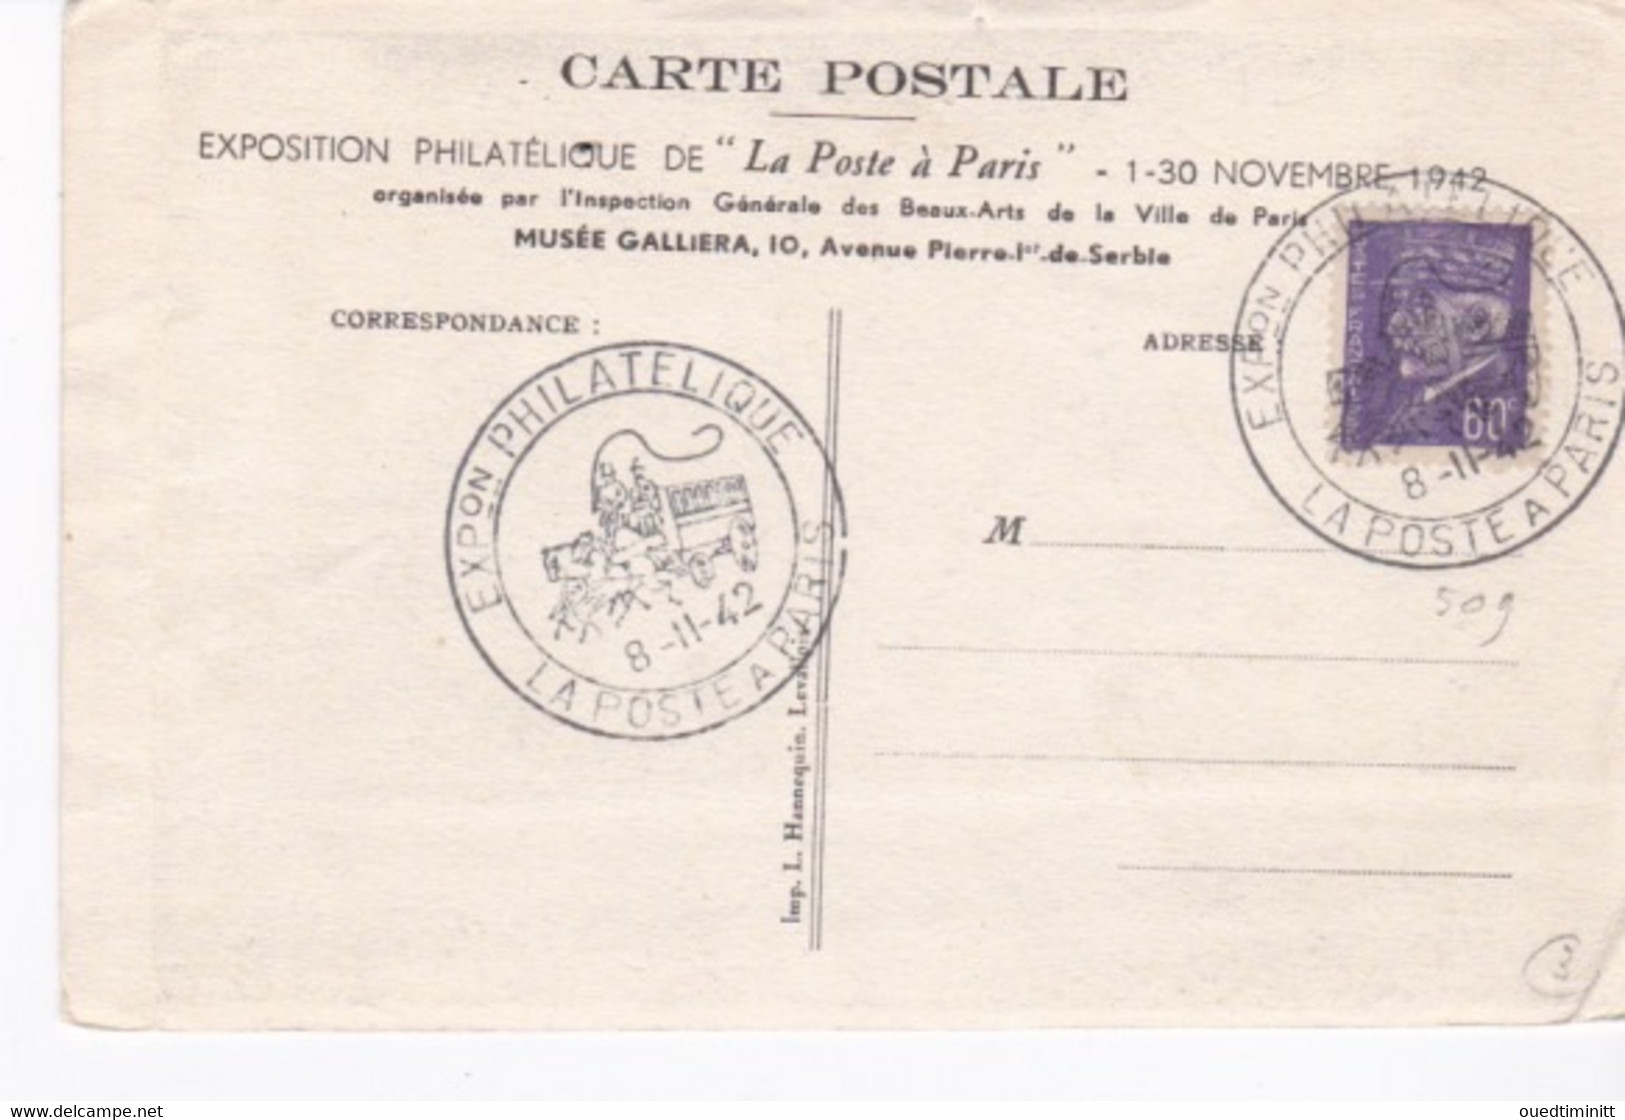 La Petite Poste. Gravure Sur Bois D'Emile Boizot, Eau Forte. Expo Philatélique De "la Poste à Paris" Nov 1942 - Philatelic Exhibitions